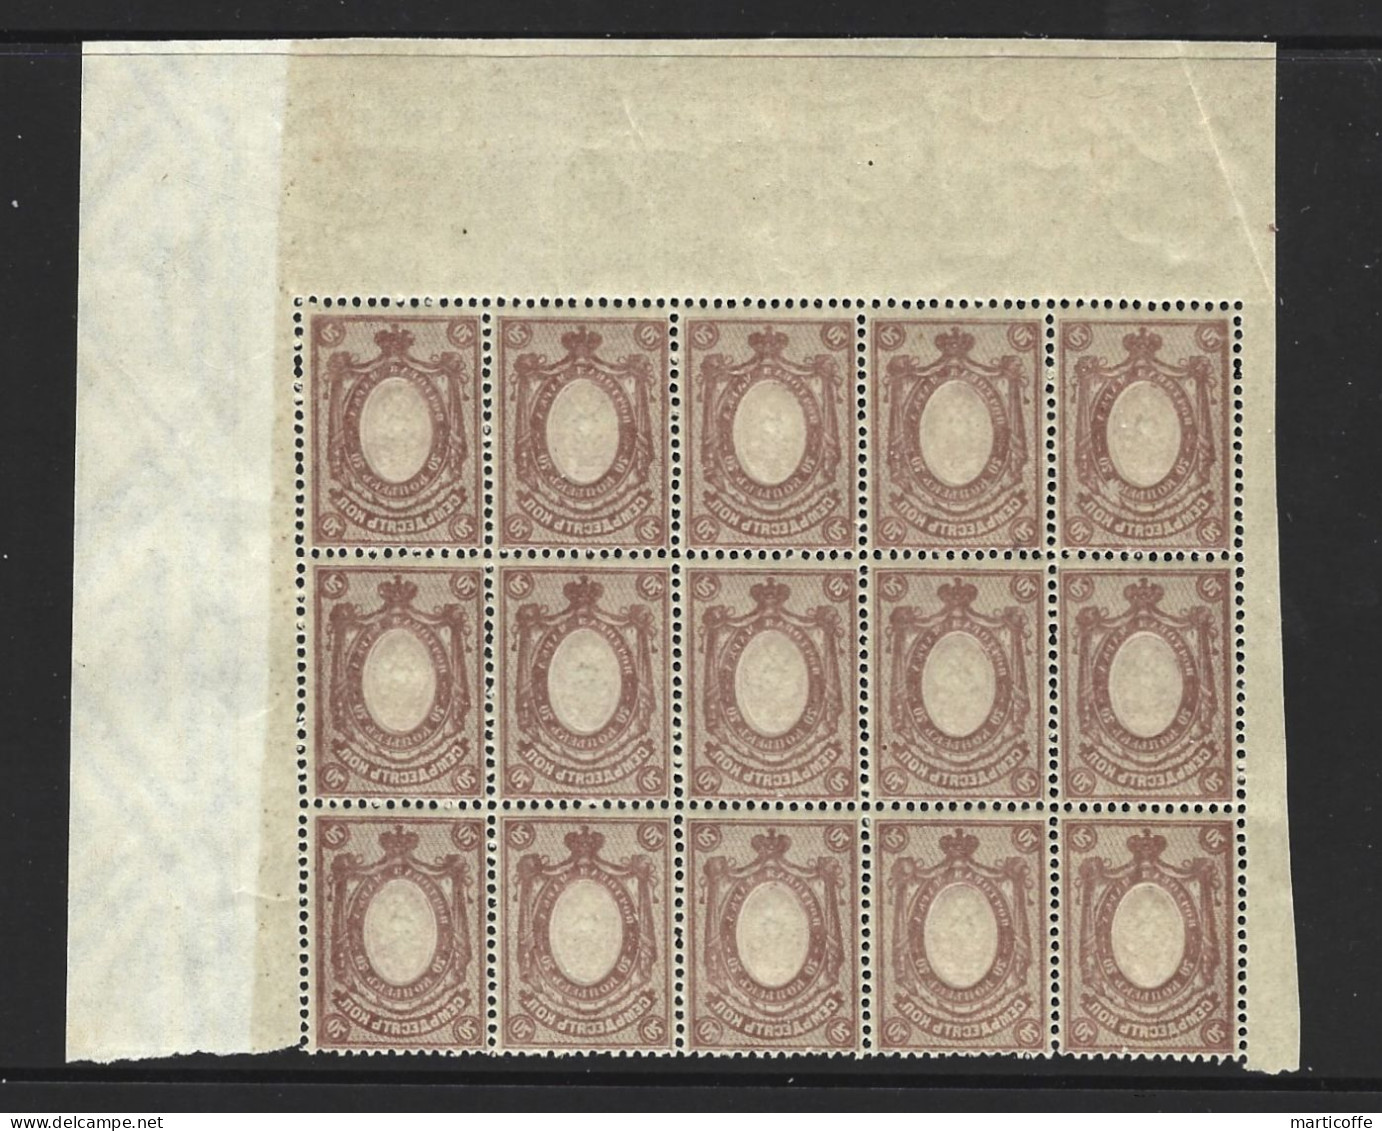 Superbe Bloc De 15 Timbres 70 Kop Impression Au Verso, Neufs,(variété Abklatch) Très Rare Et Cote Supérieure à 400 Euros - Unused Stamps